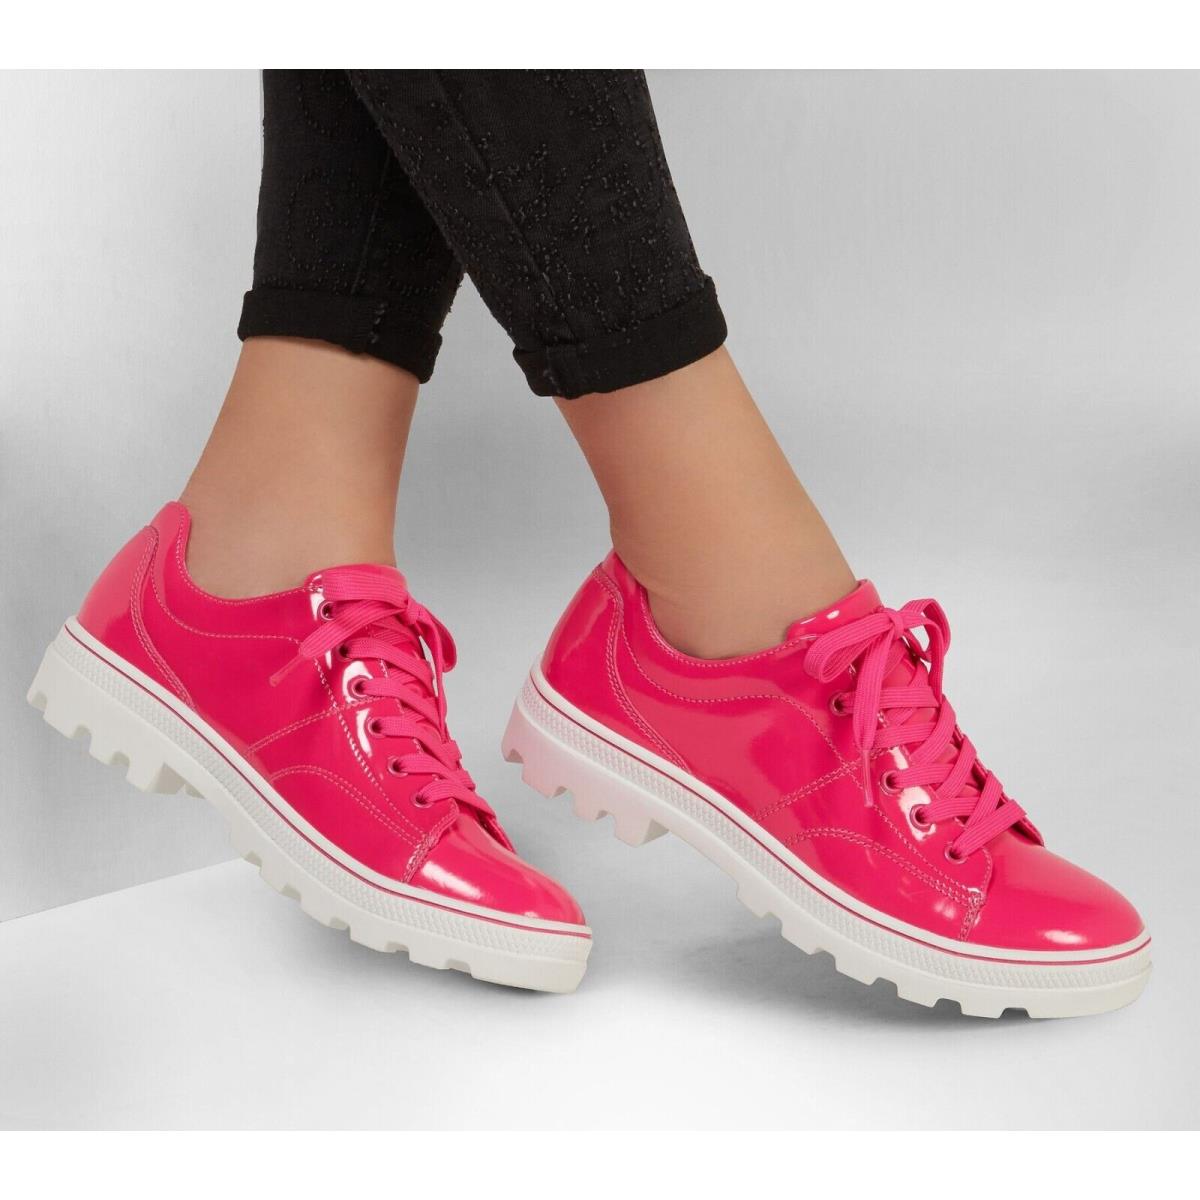 Skechers shoes Roadies - Hot Pink 6